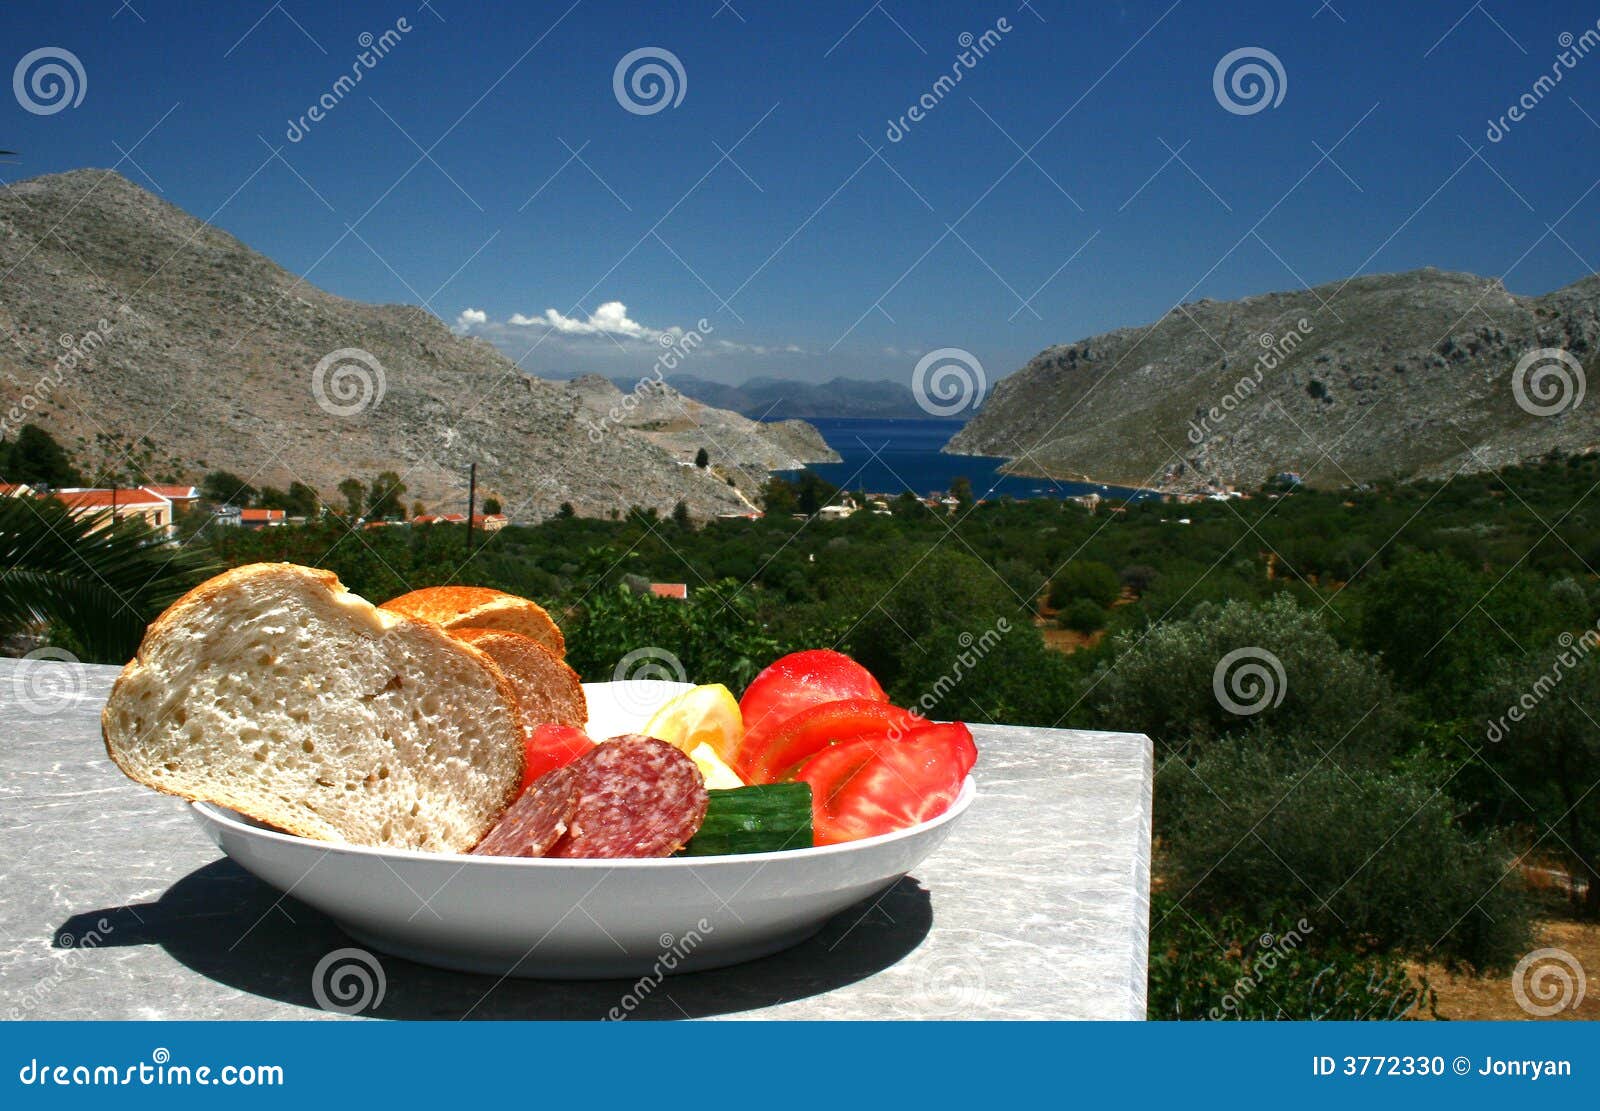 mediterranian diet